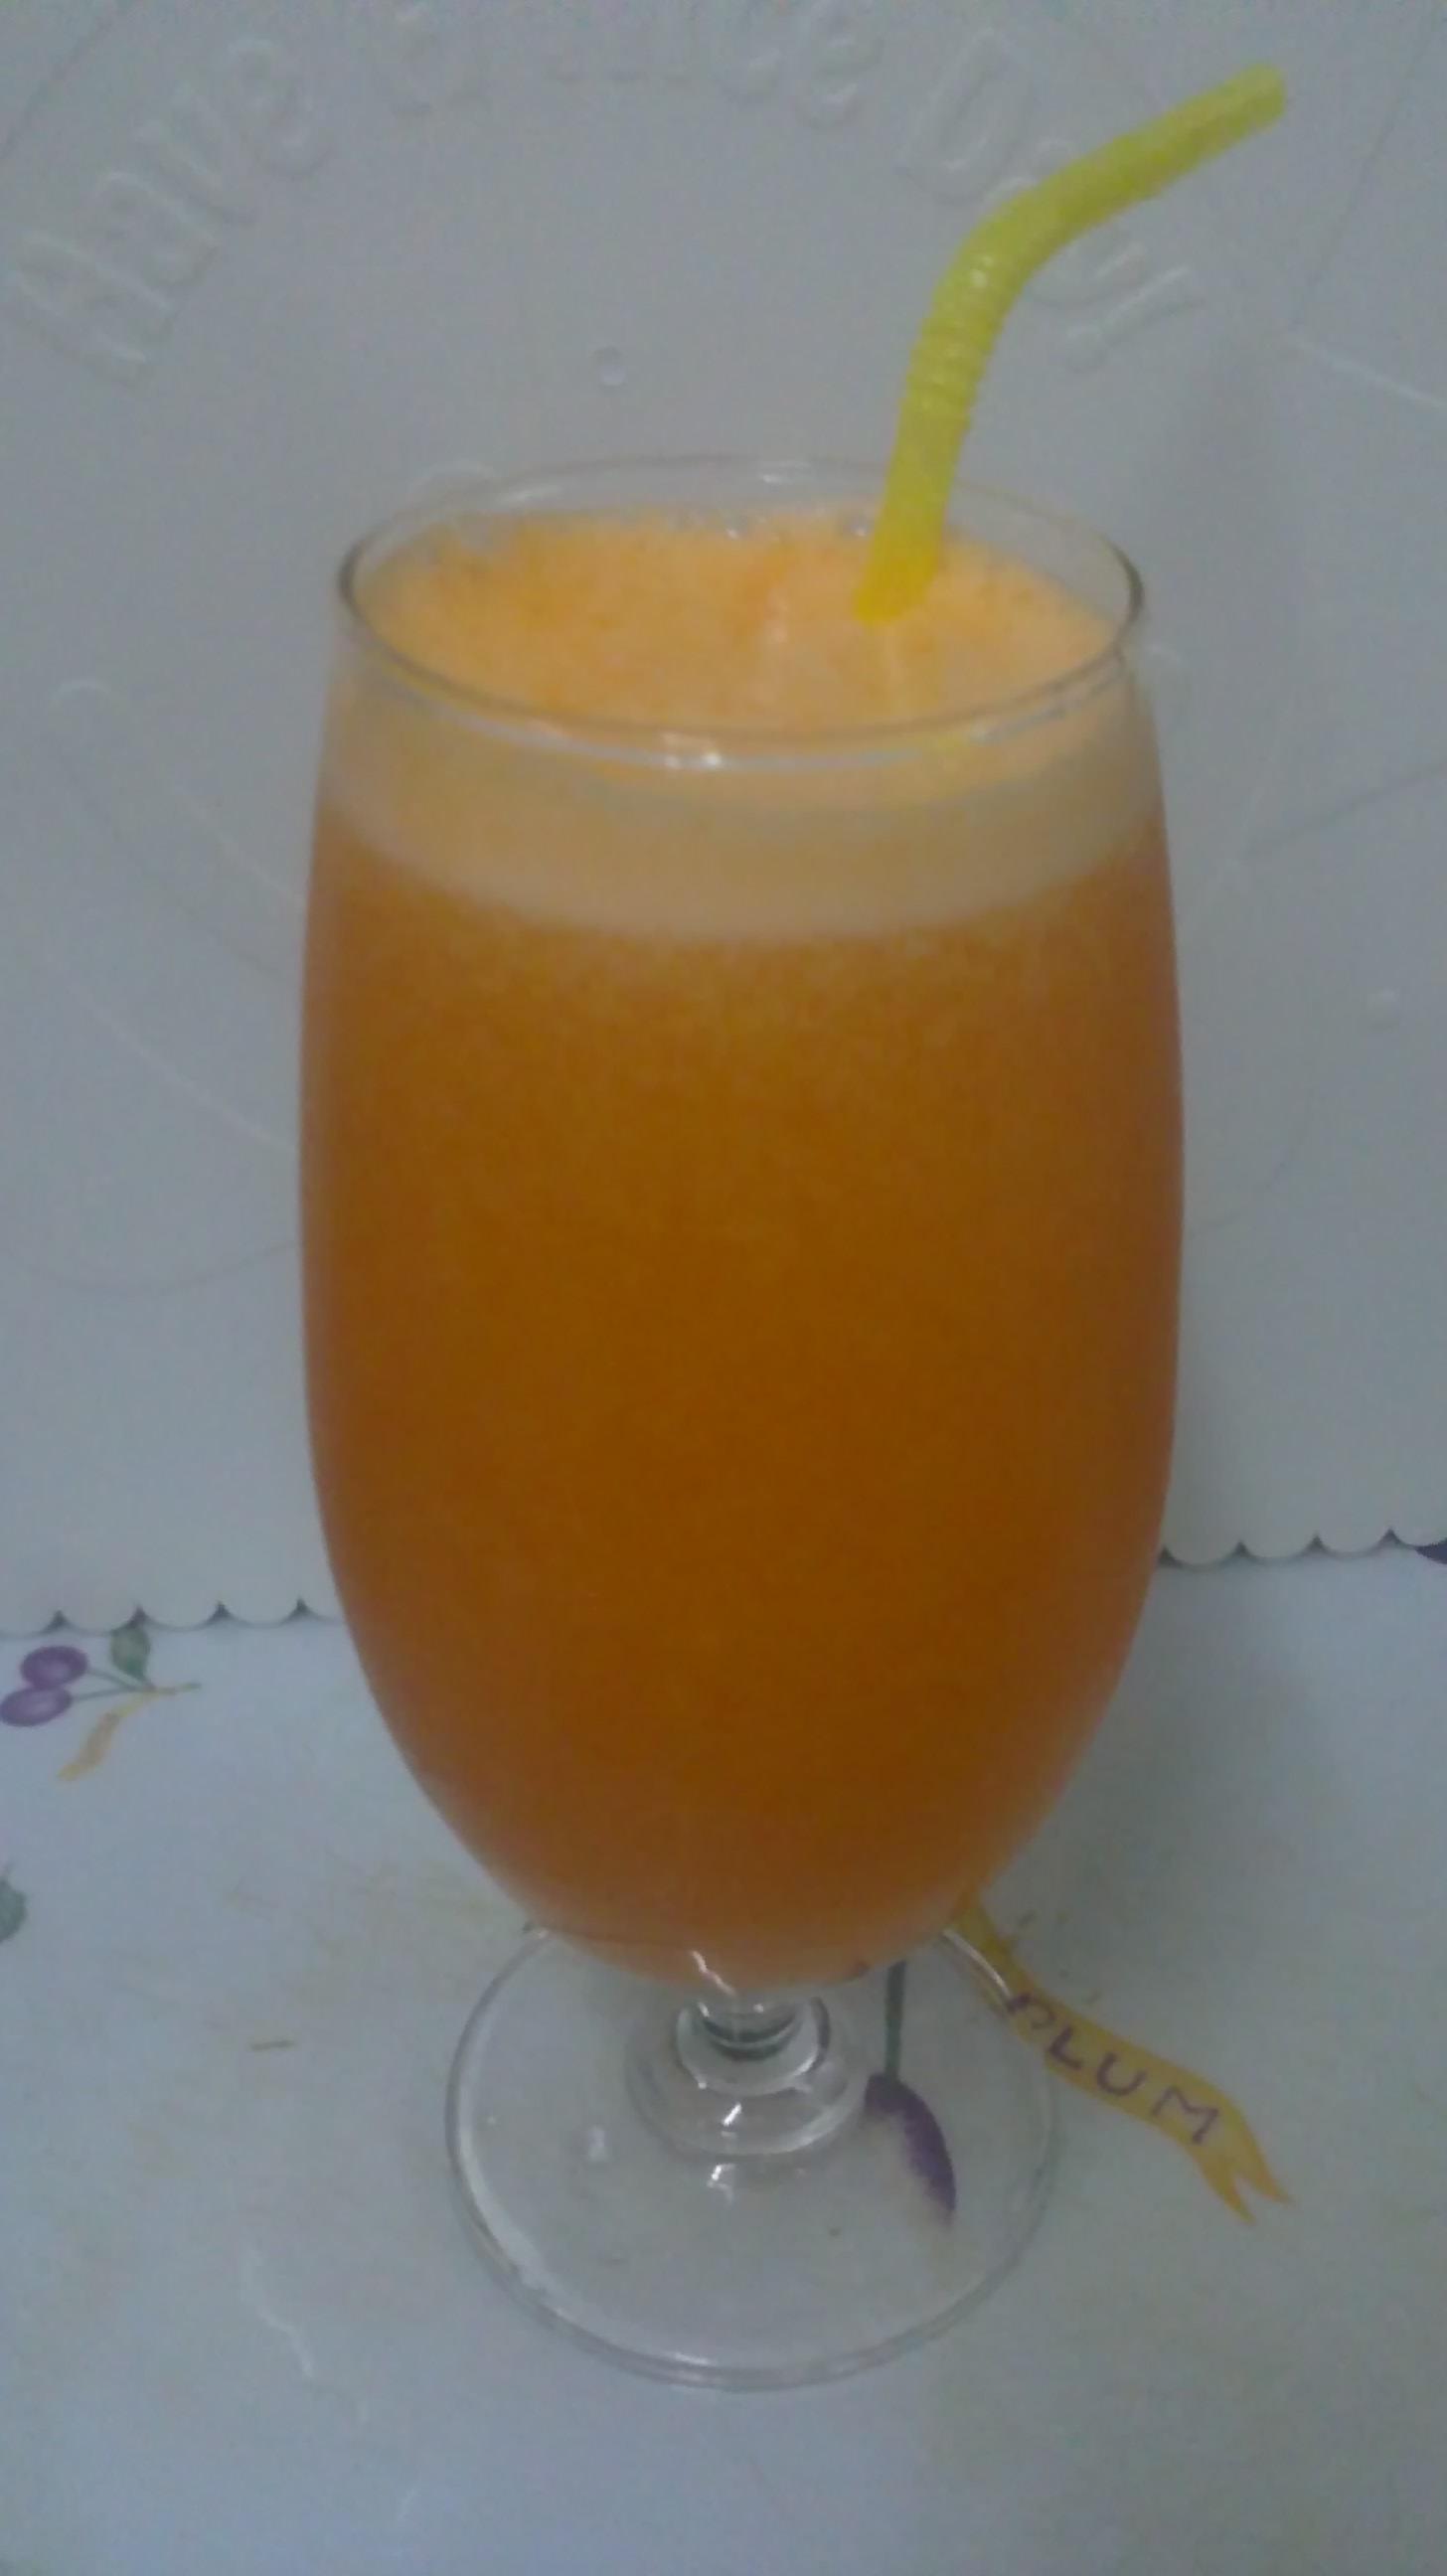 柳橙胡萝卜汁